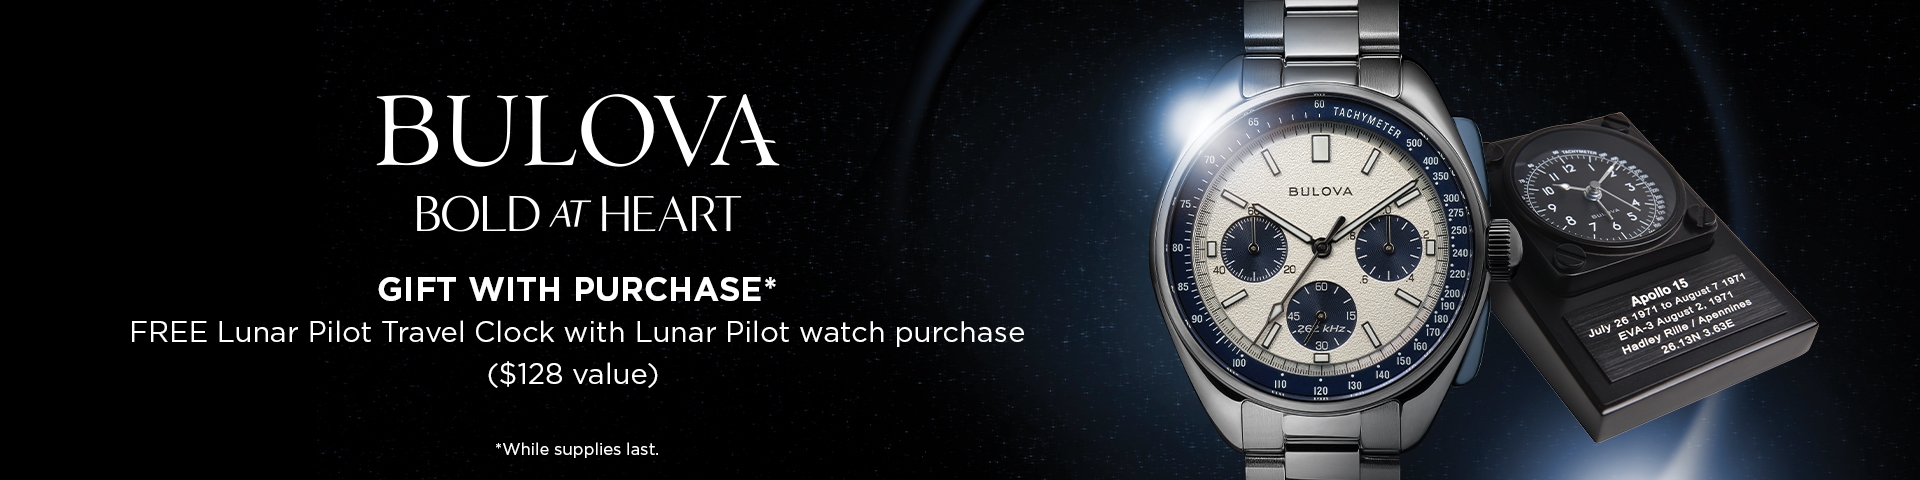 Free Lunar Pilot clock with purchase of a Bulova Lunar Pilot watch